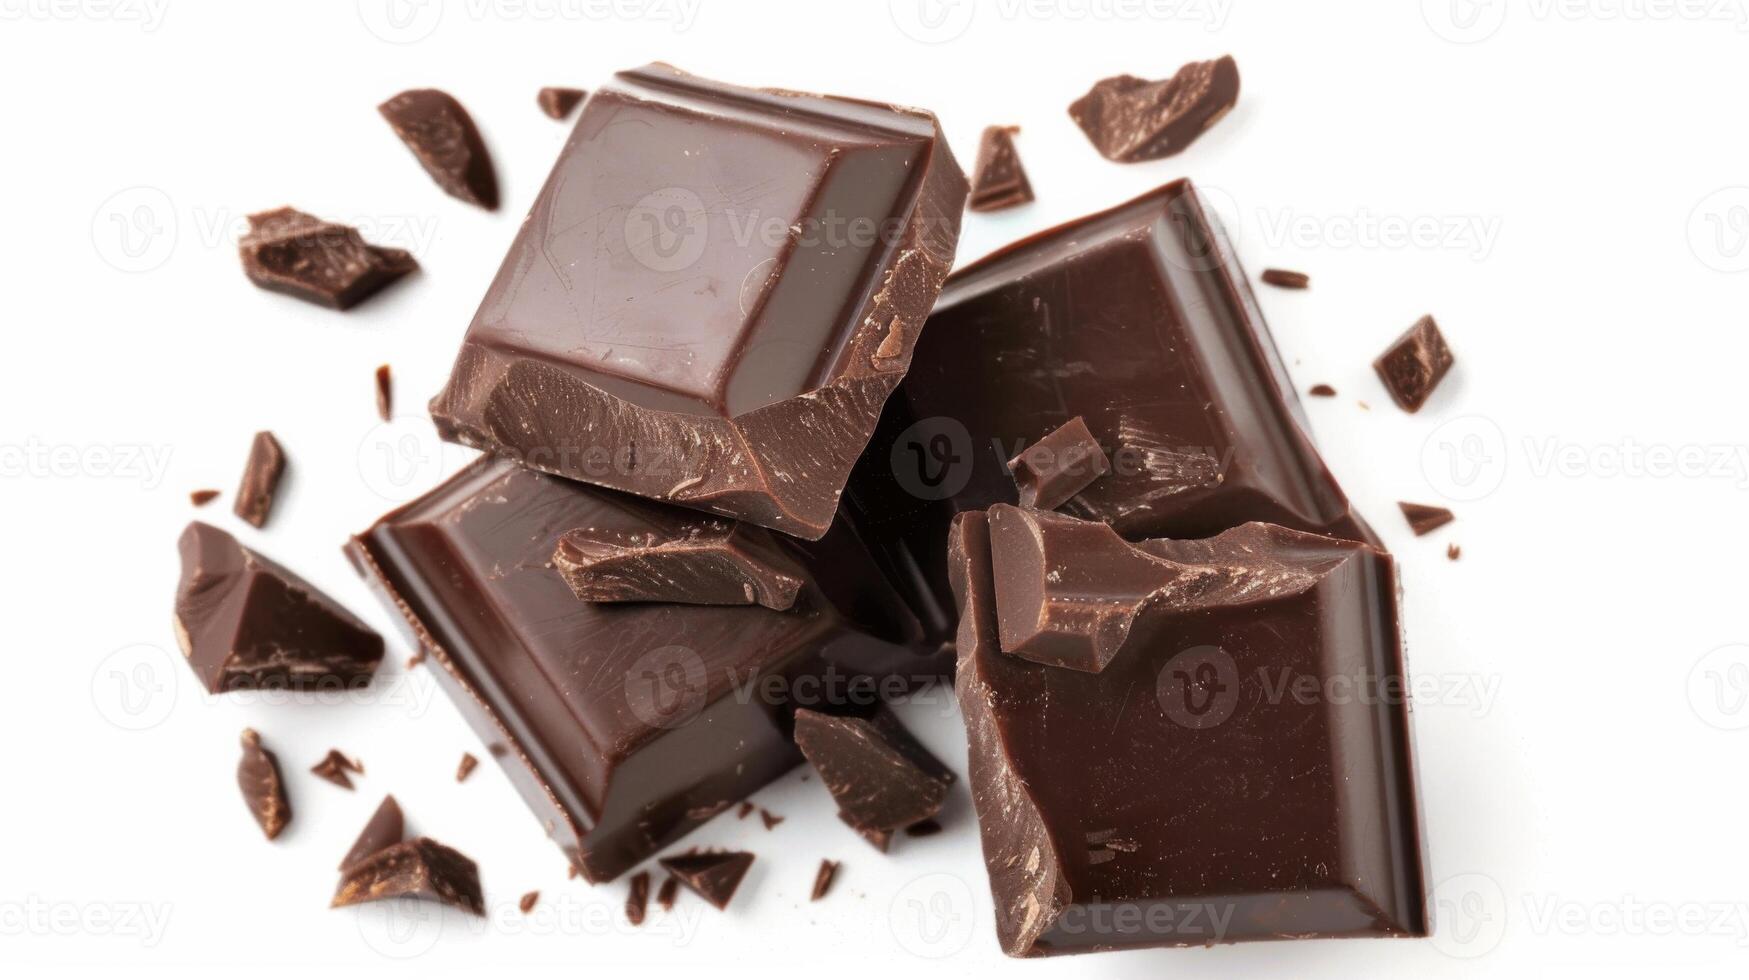 geassorteerd donker chocola stukken detailopname geïsoleerd in wit achtergrond foto